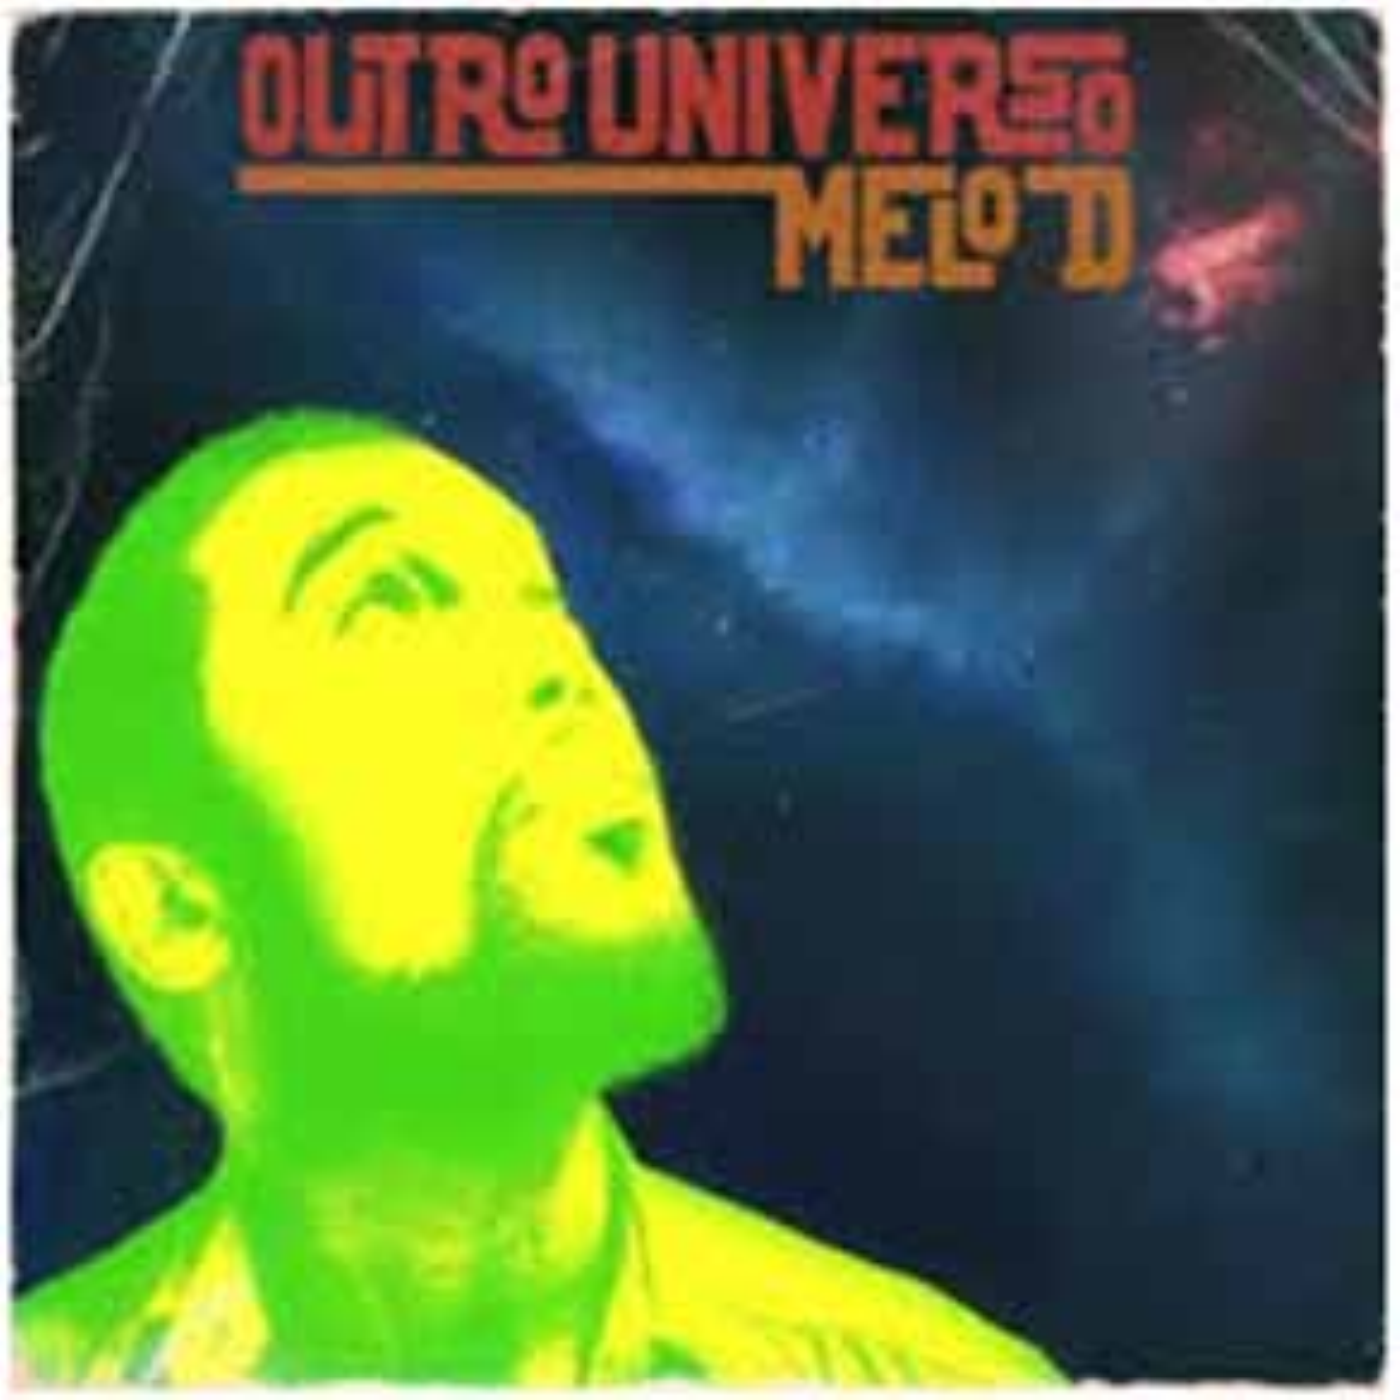 MELO D - OUTRO UNIVERSO